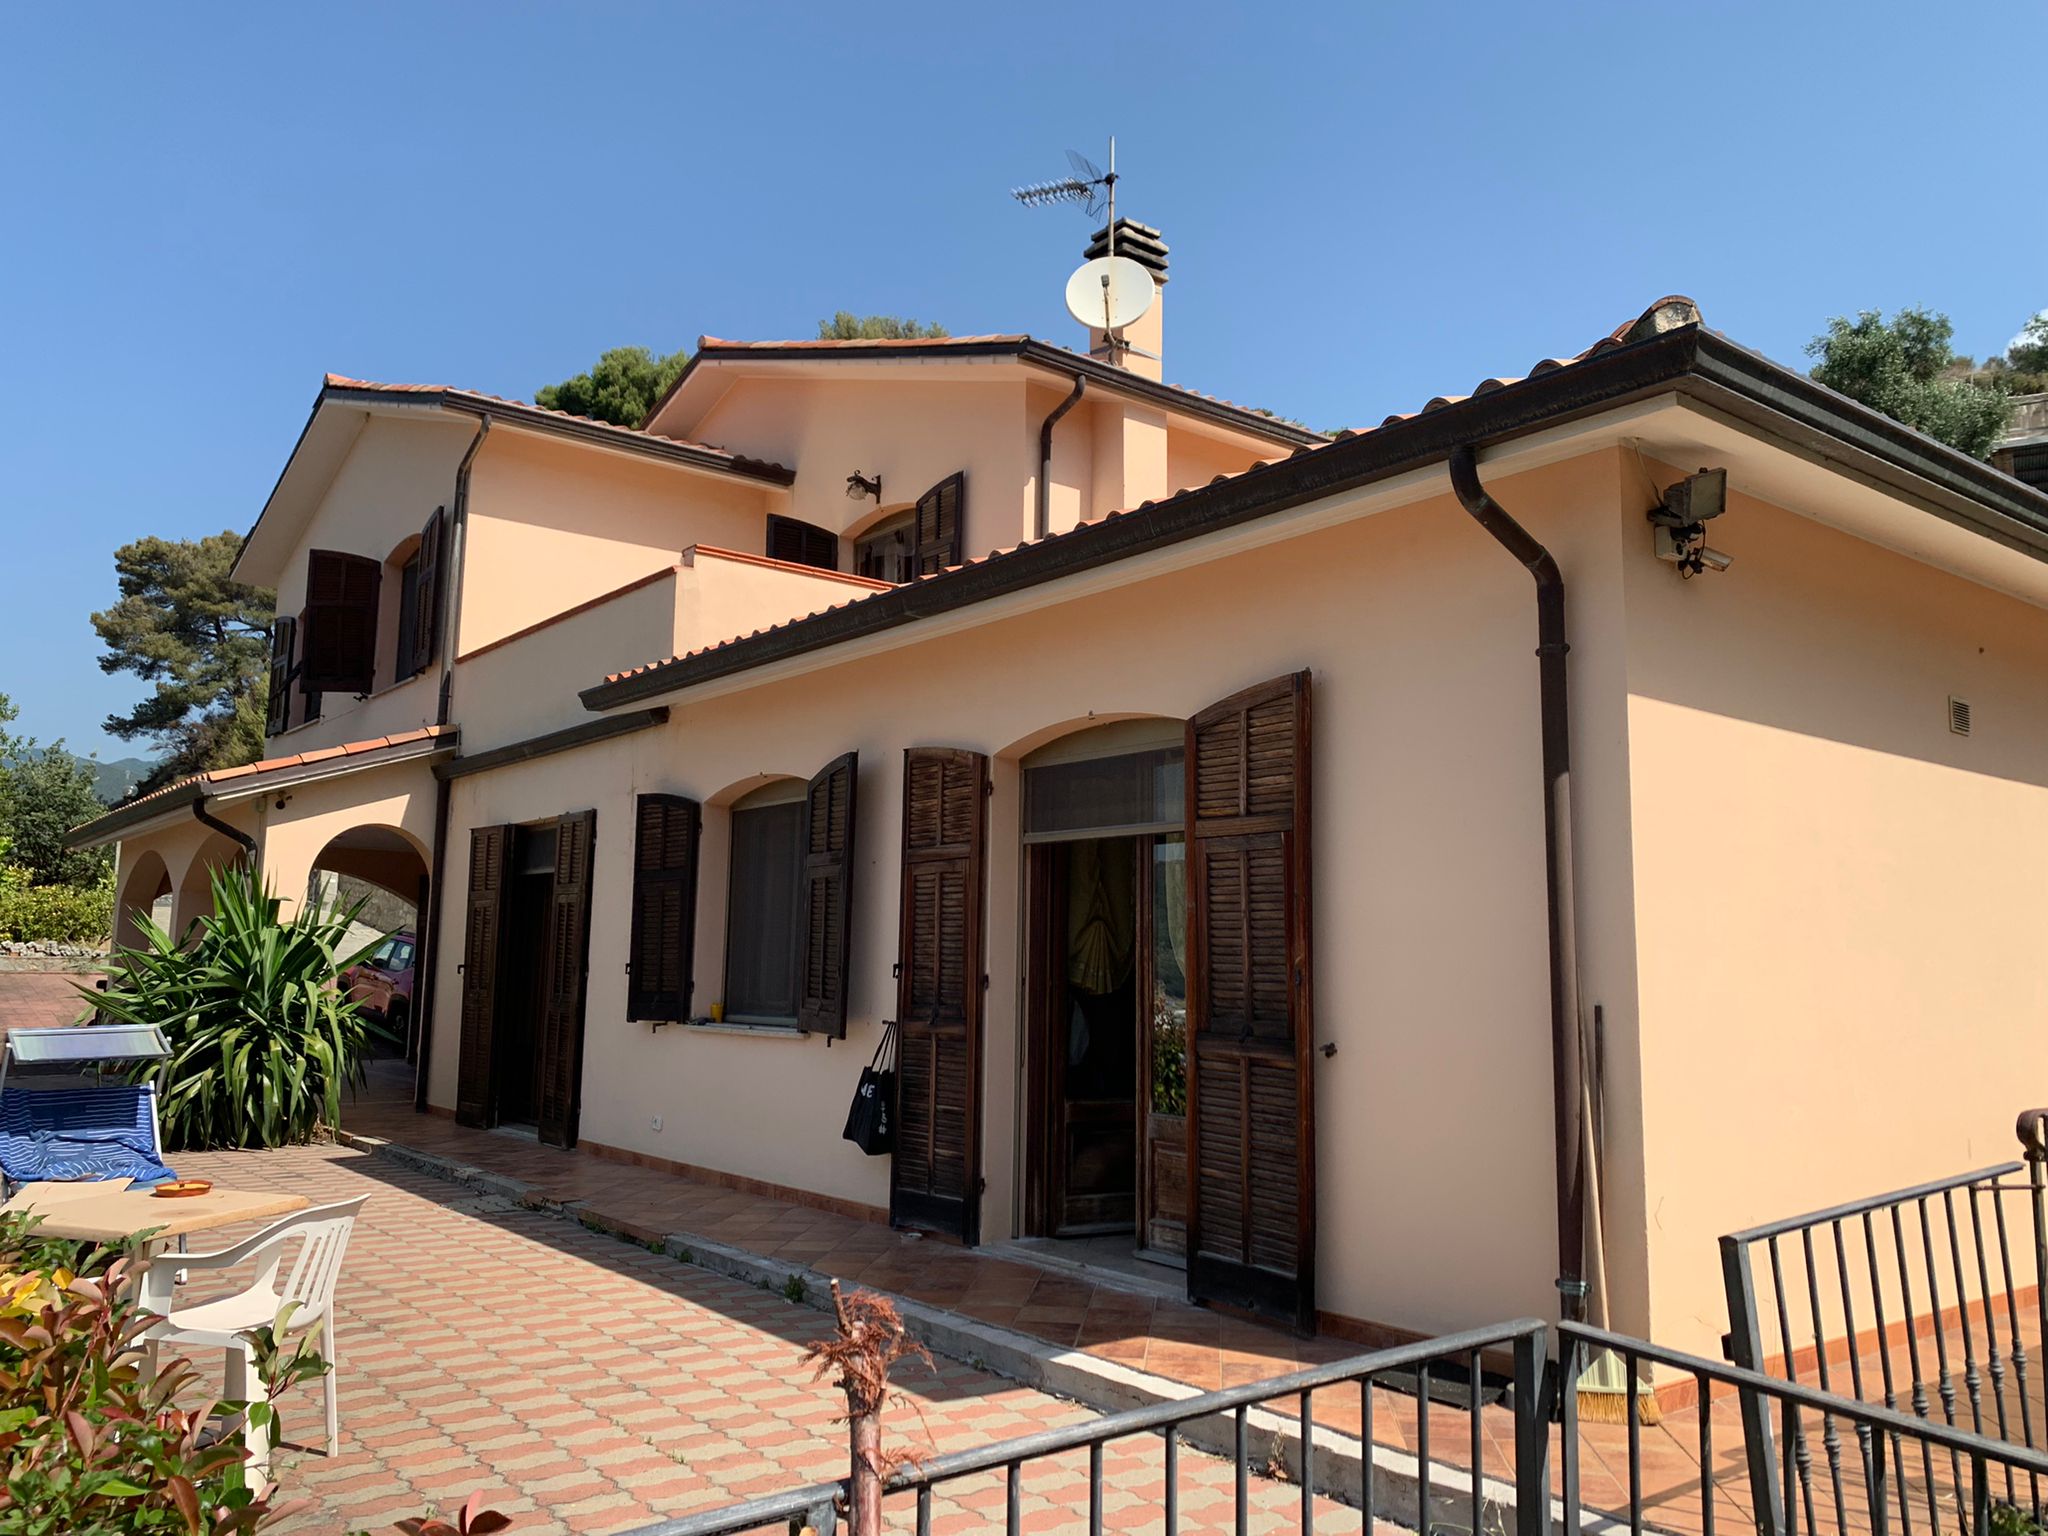 Se vende villa in zona tranquila Taggia Liguria